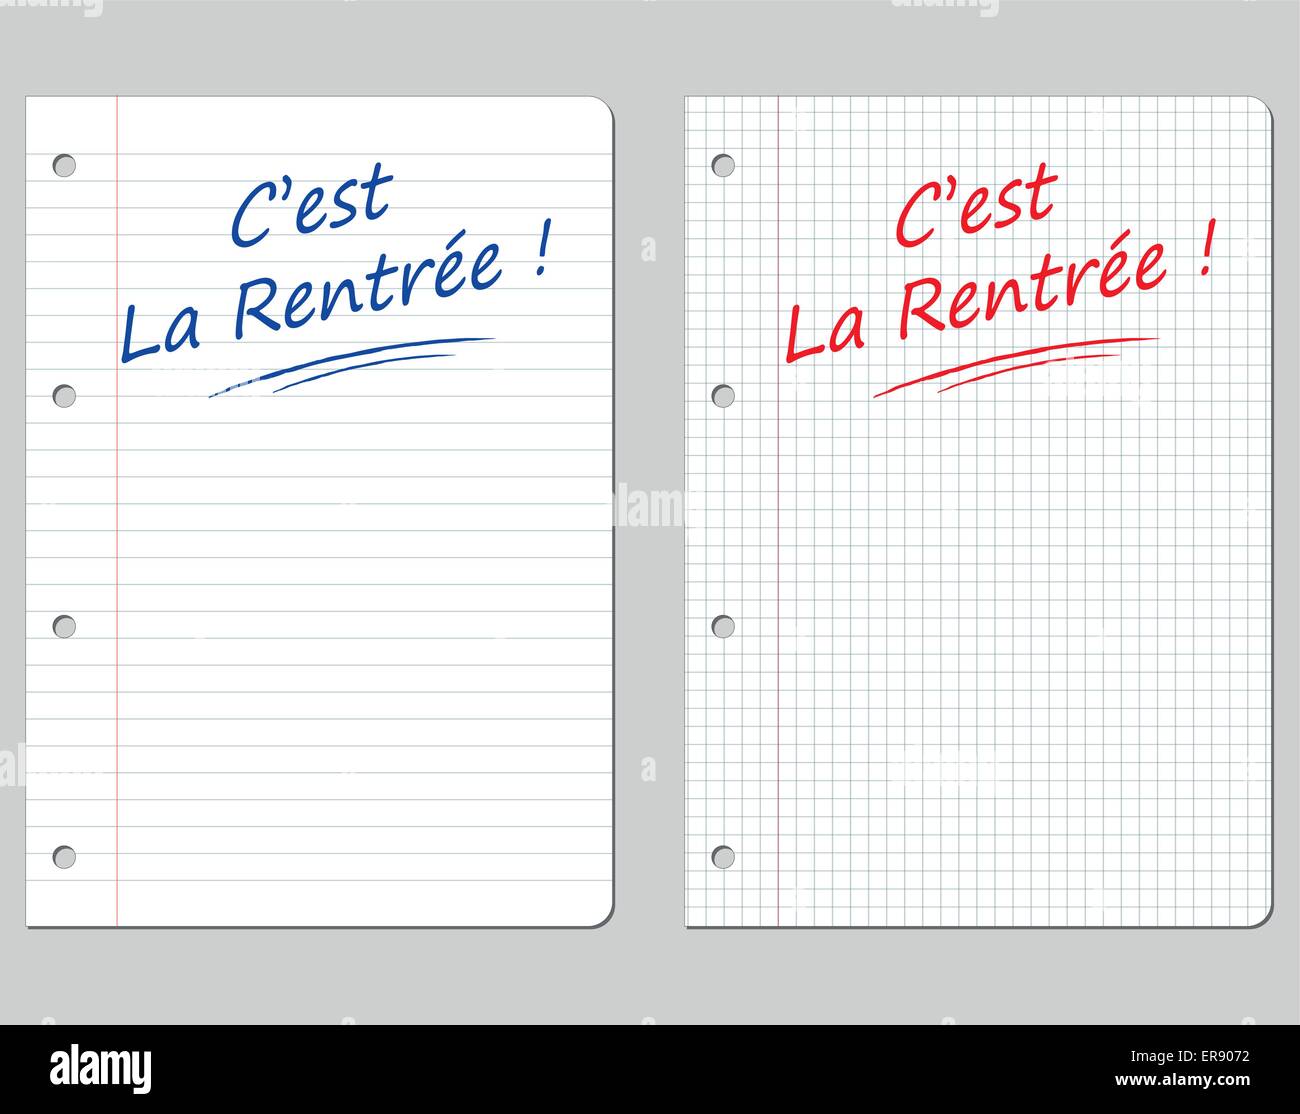 Traduzione in francese per il ritorno a scuola lo sfondo della carta Illustrazione Vettoriale